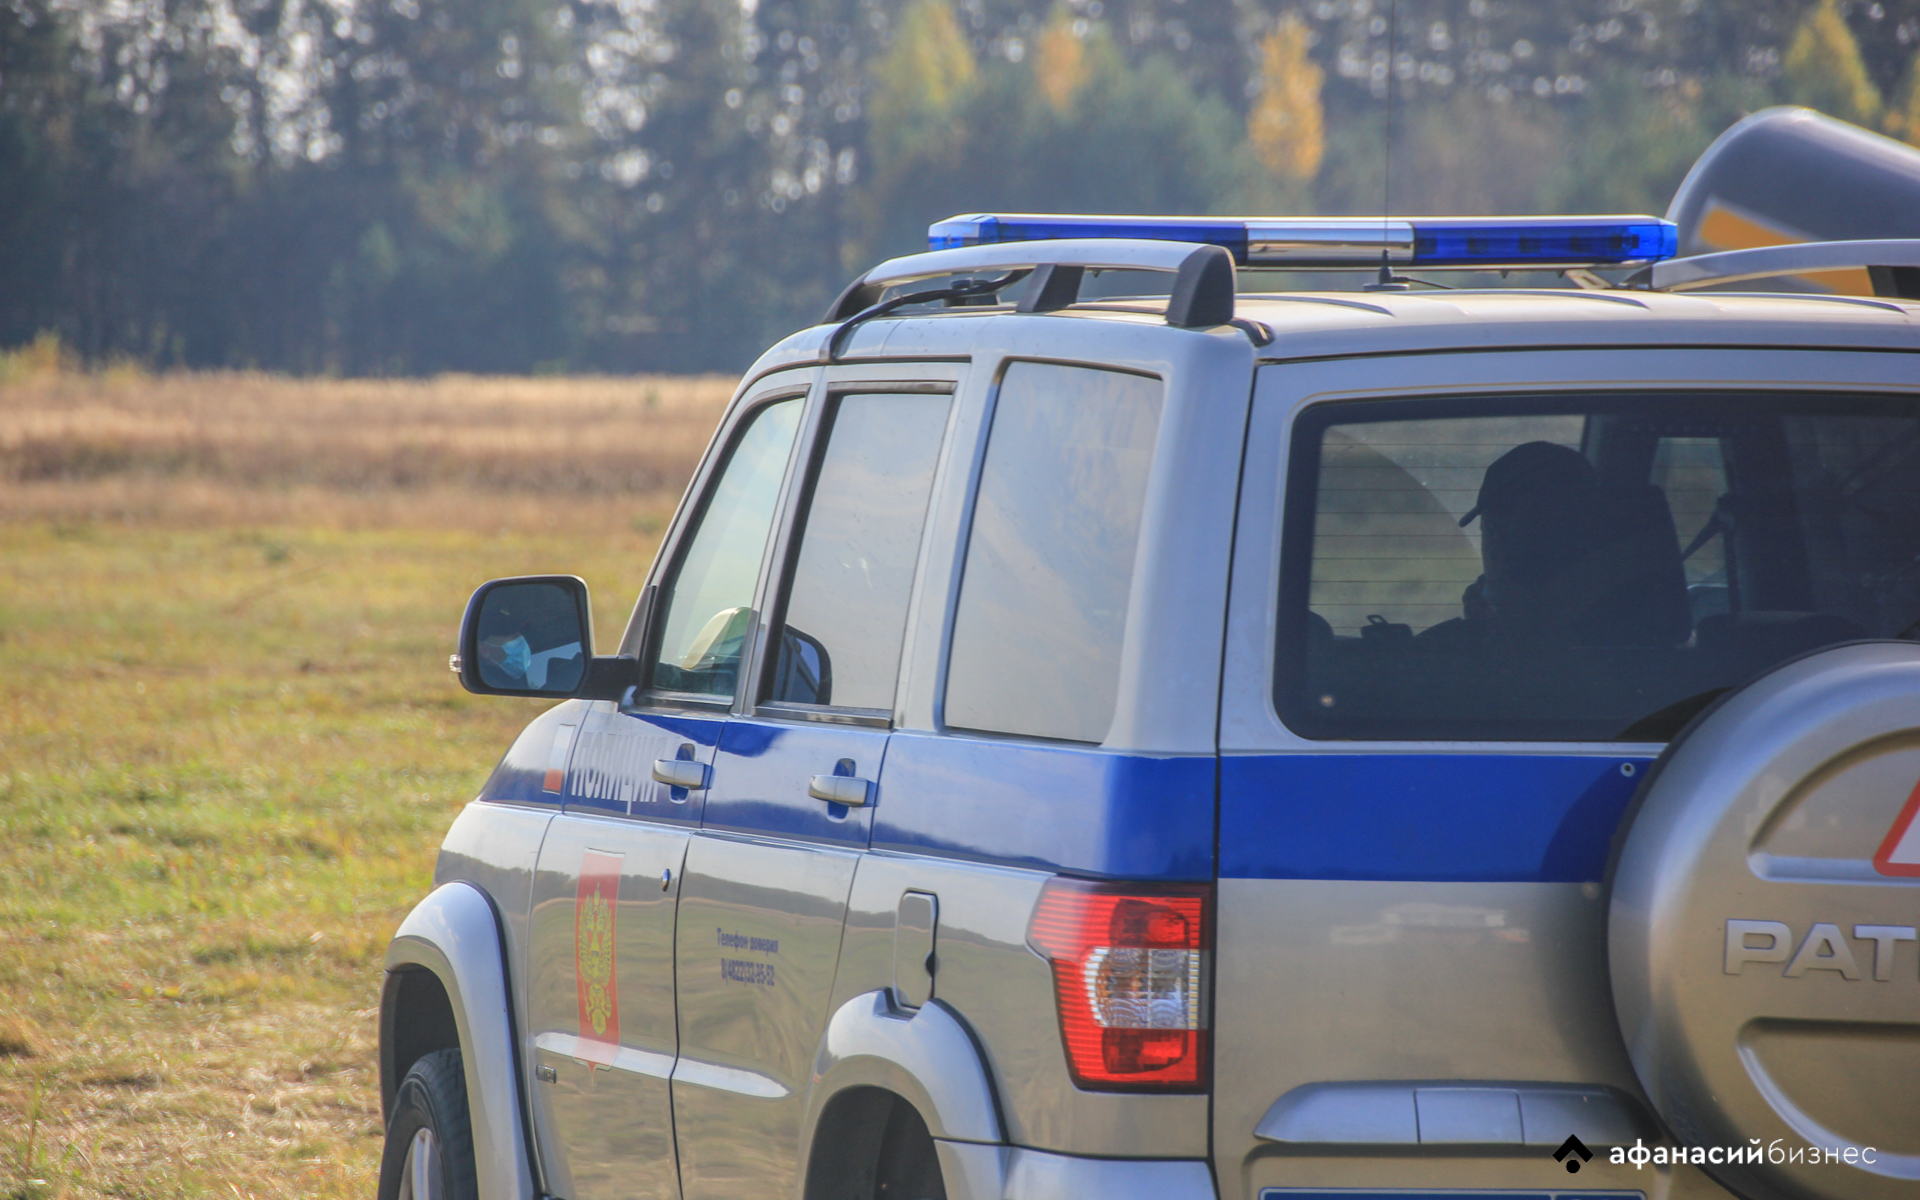 В Тверской области молодой парень угнал и разбил чужую машину - новости Афанасий